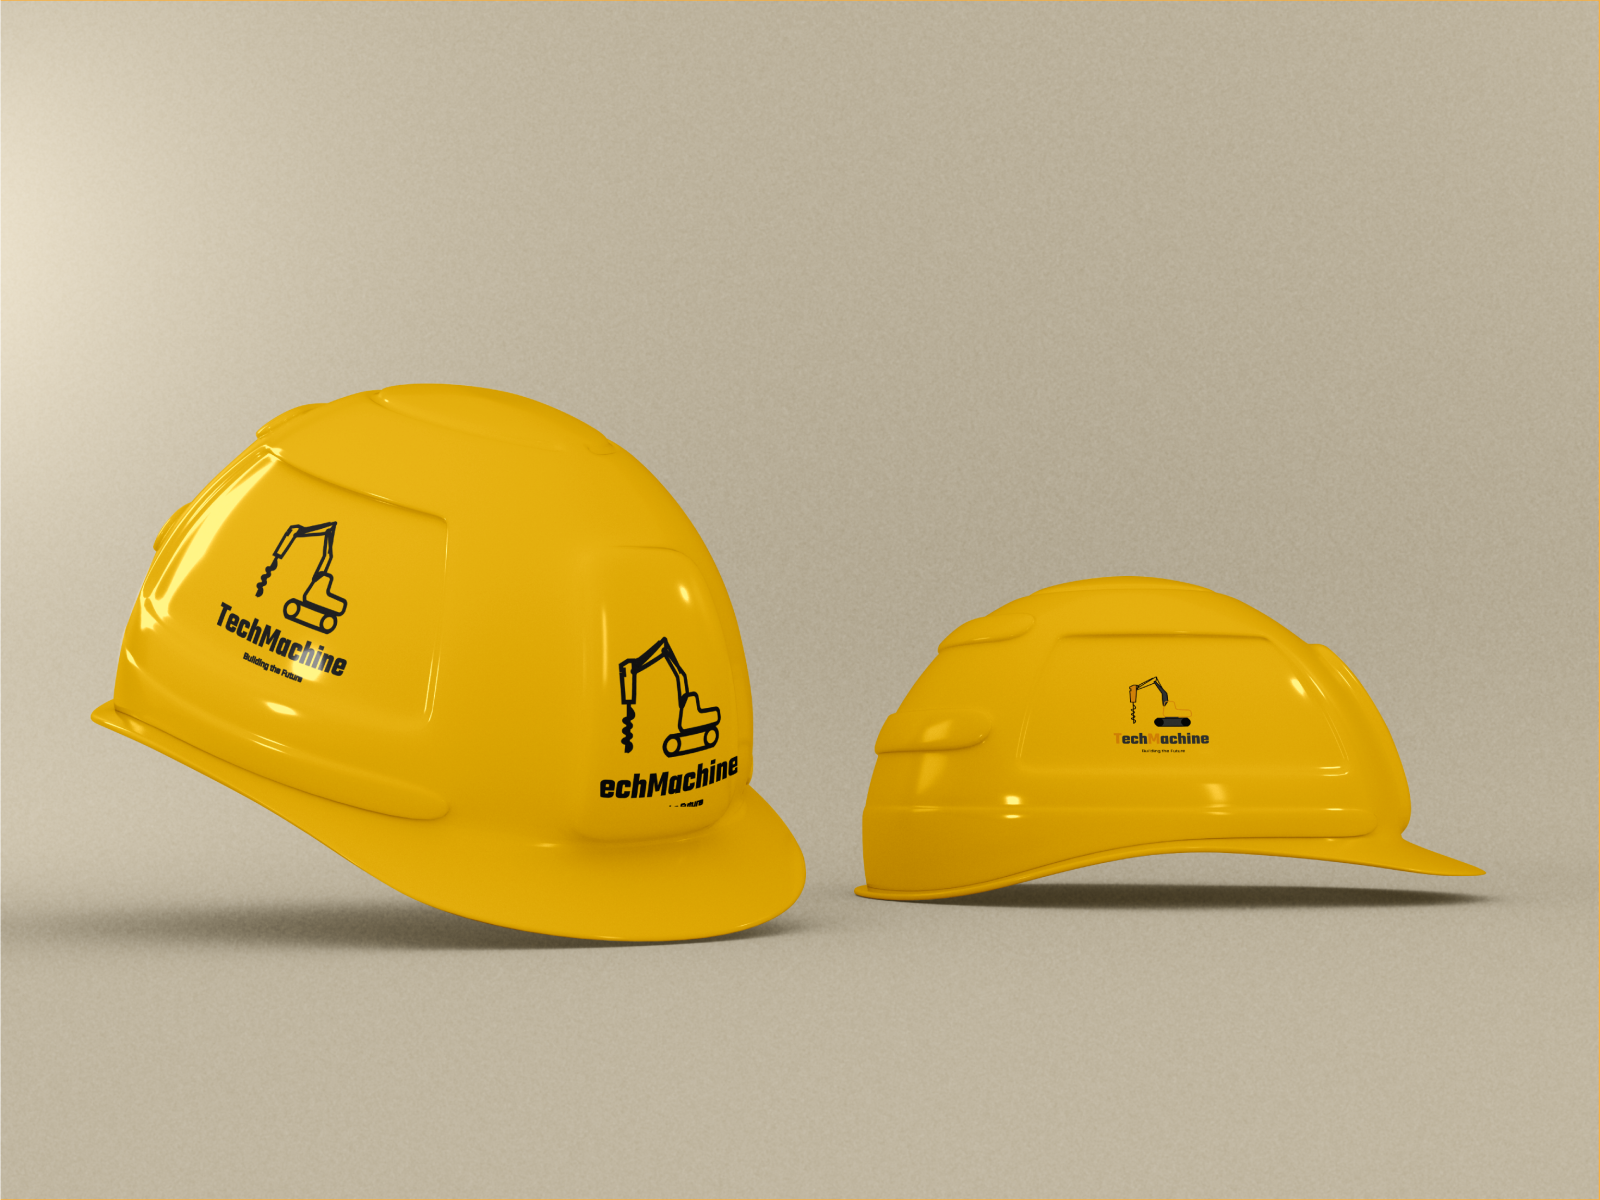 construction company logo by Anahit Mardiyan on Dribbble